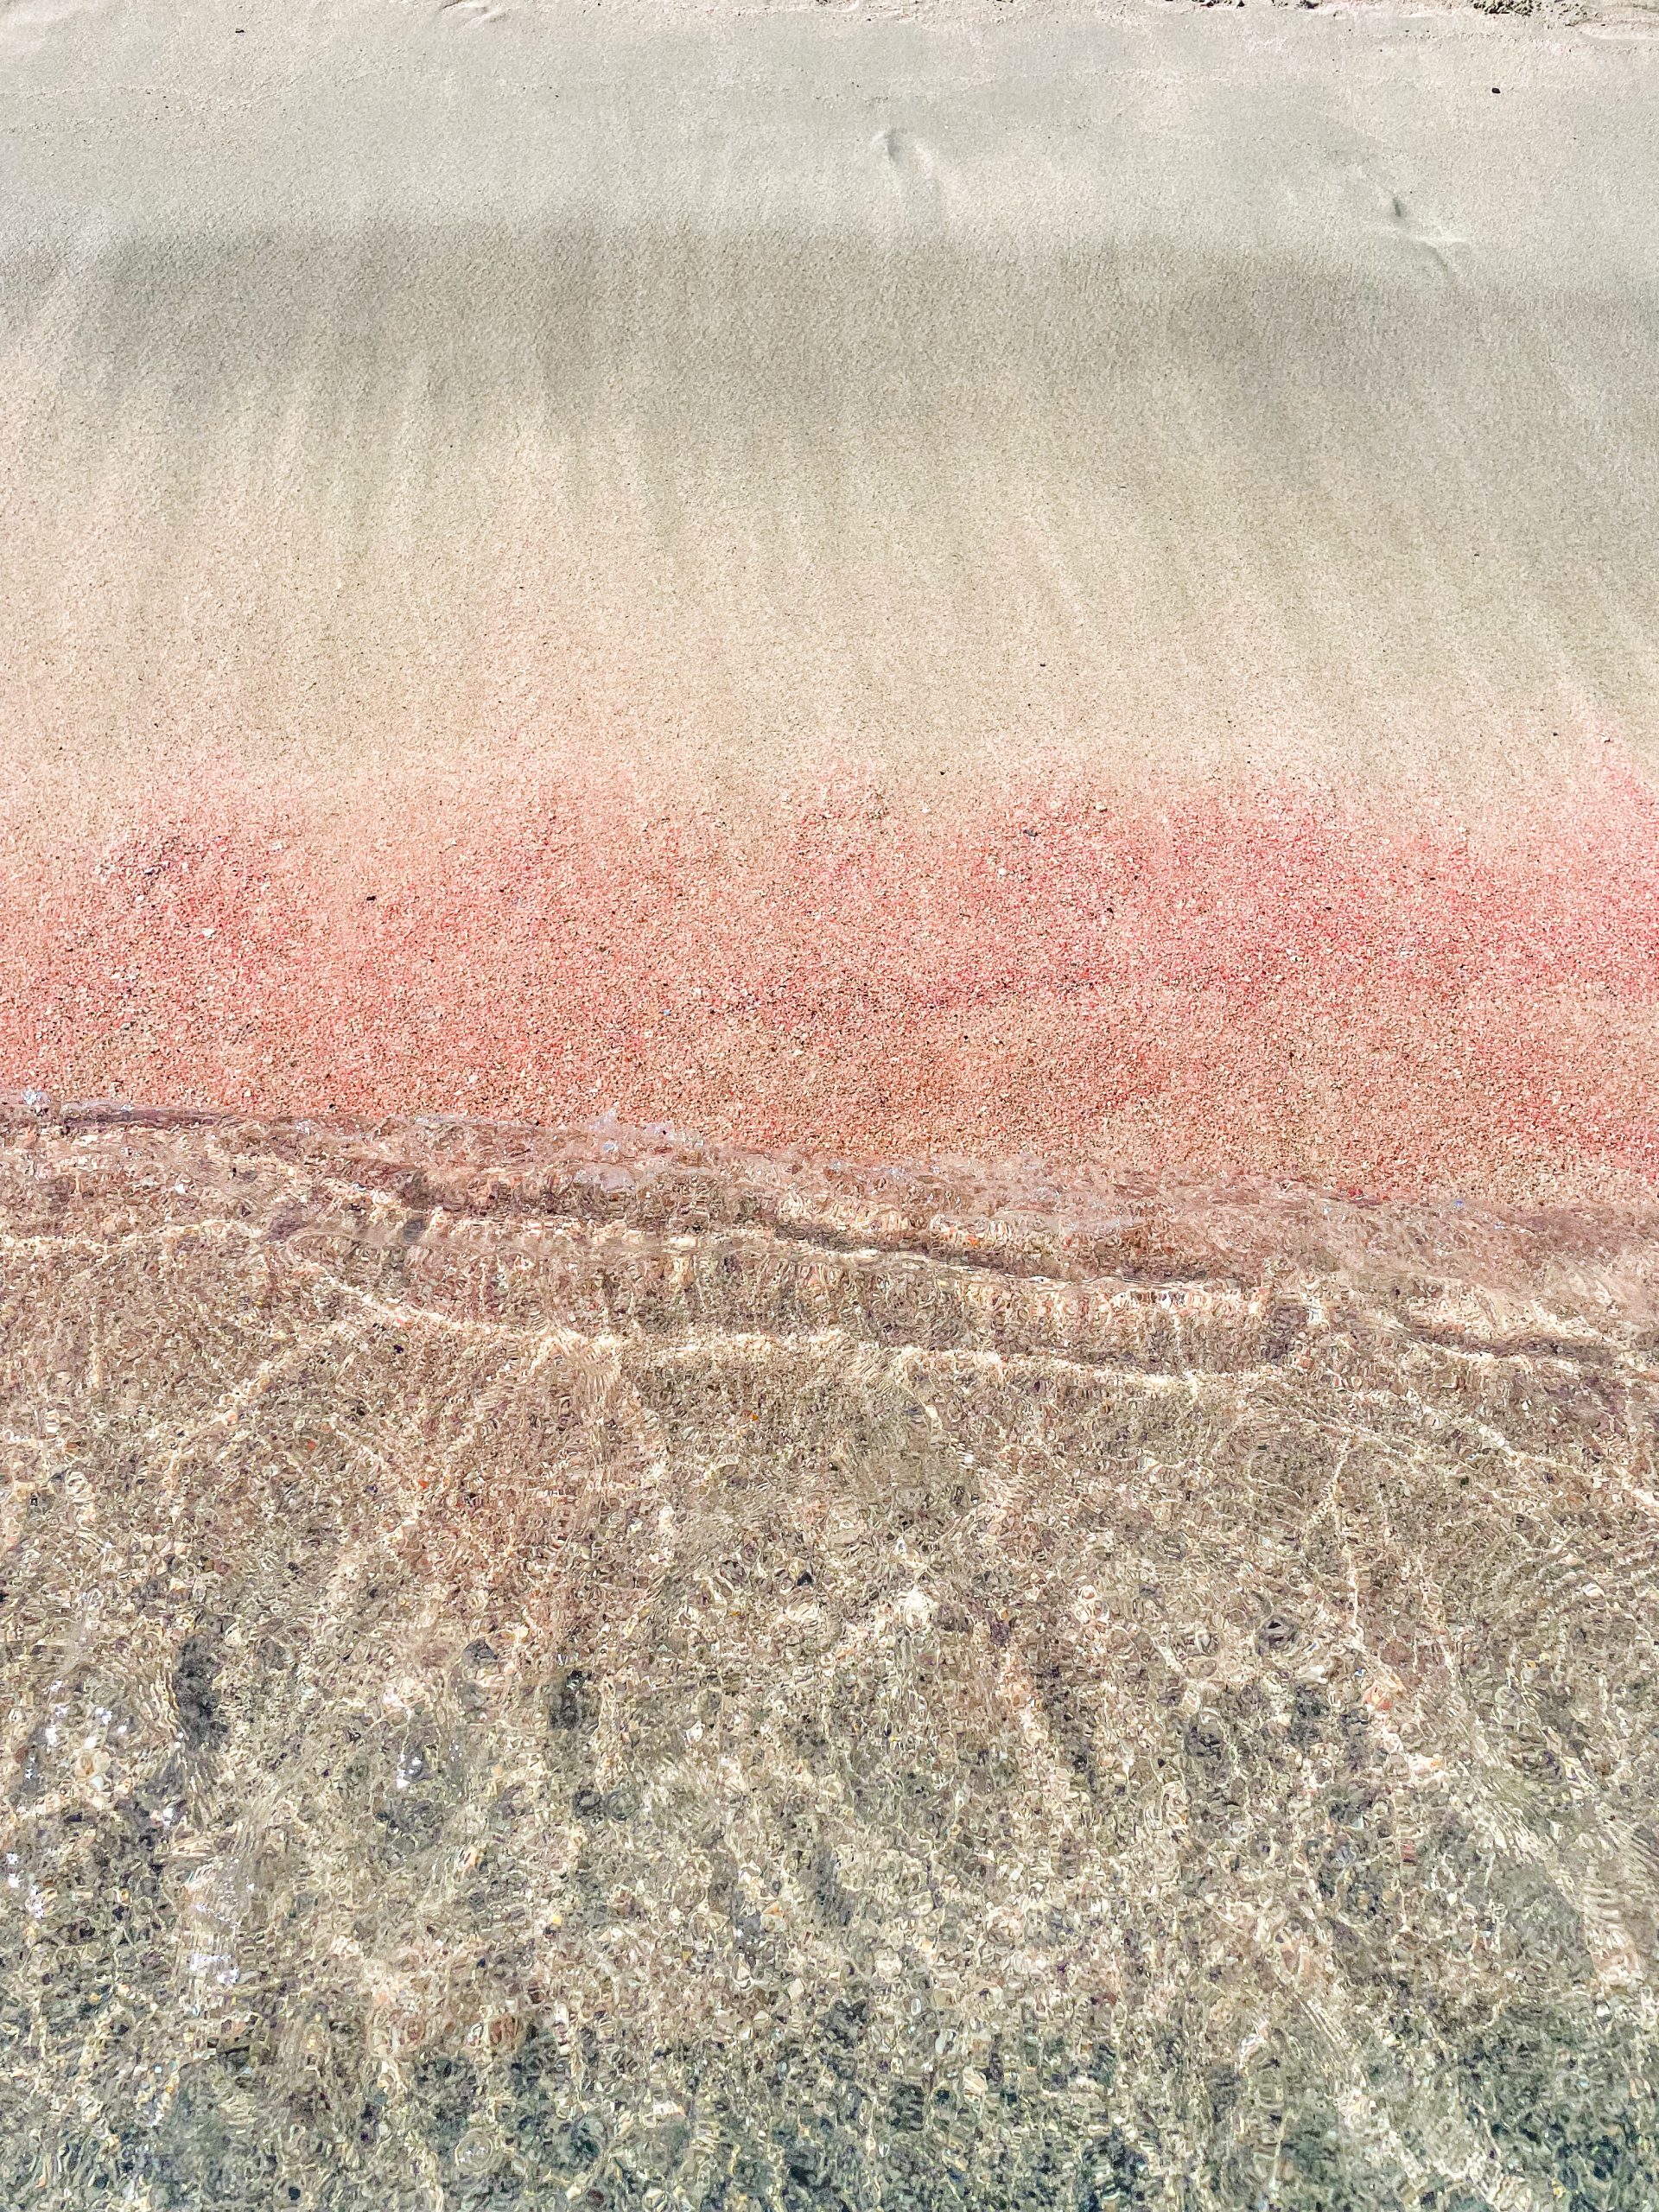 plaża na krecie elafonisi różowy piasek